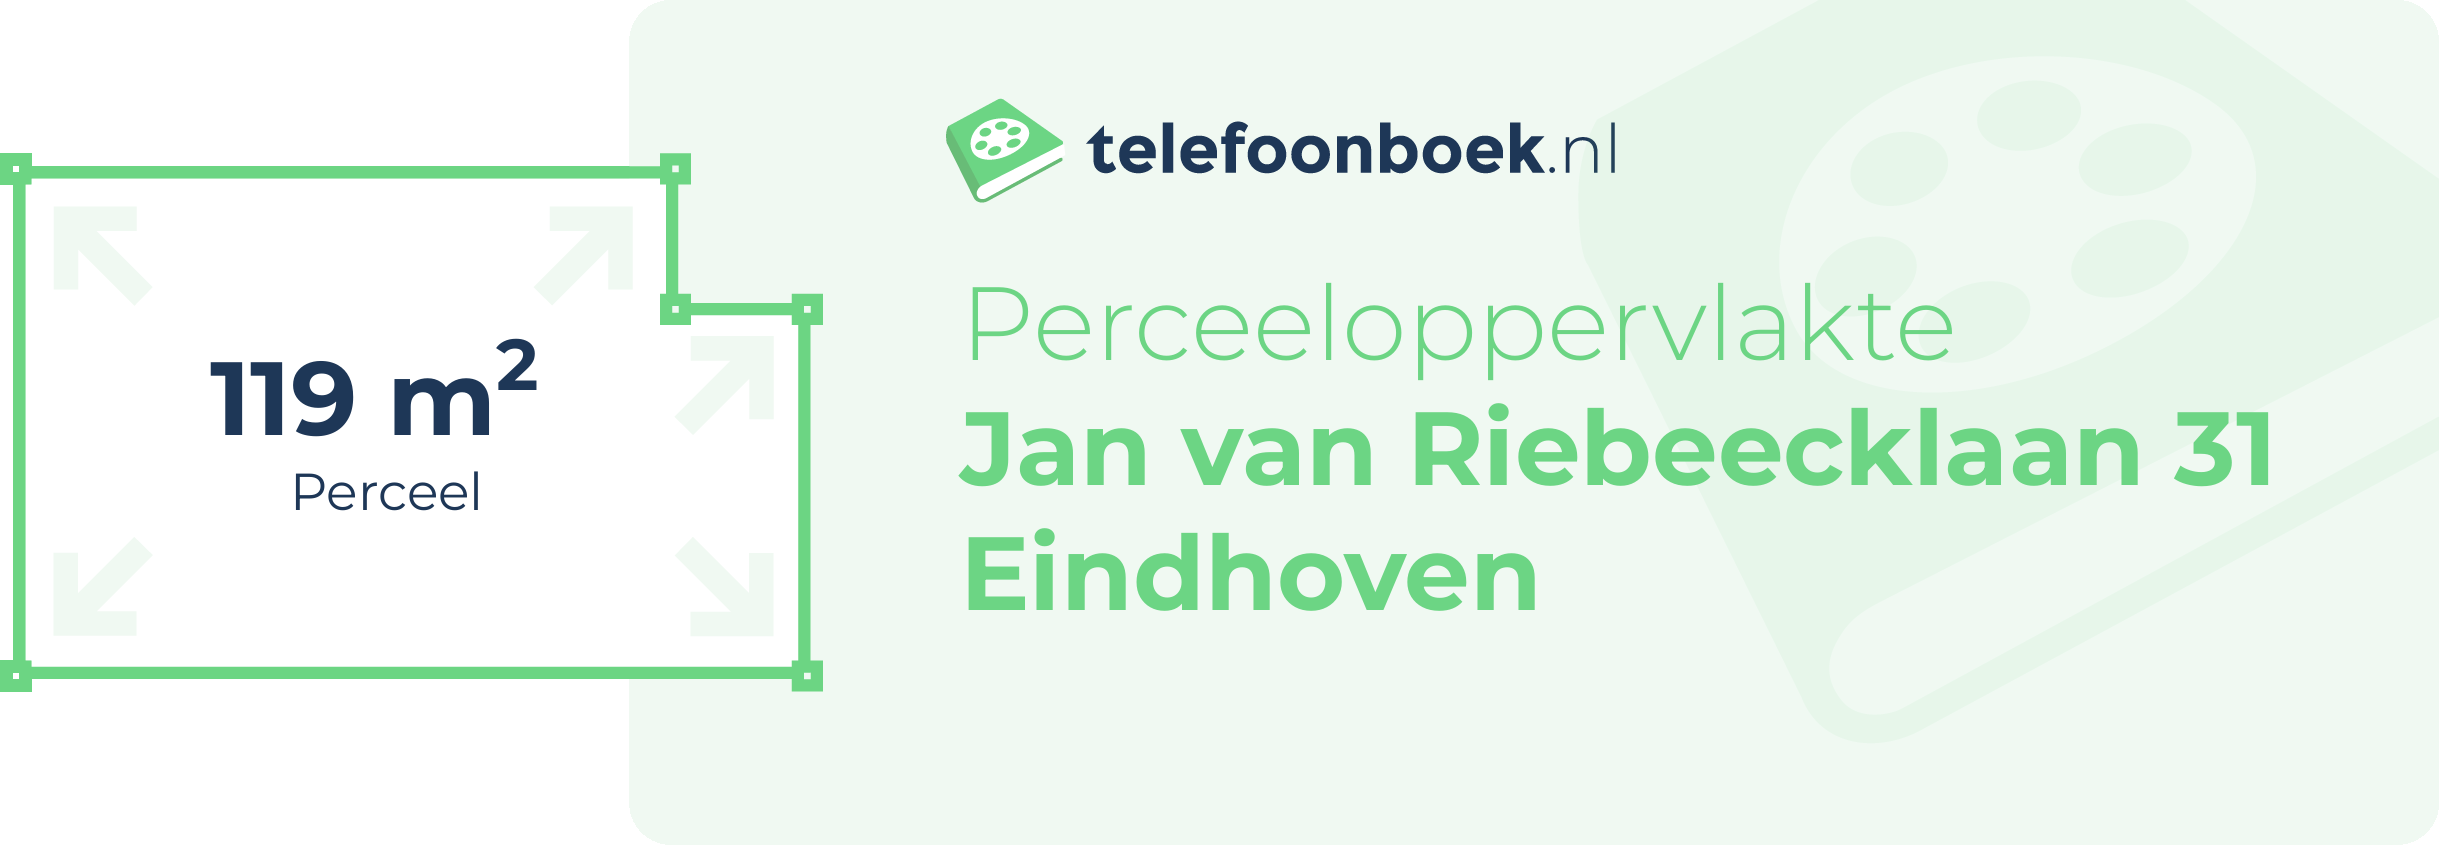 Perceeloppervlakte Jan Van Riebeecklaan 31 Eindhoven